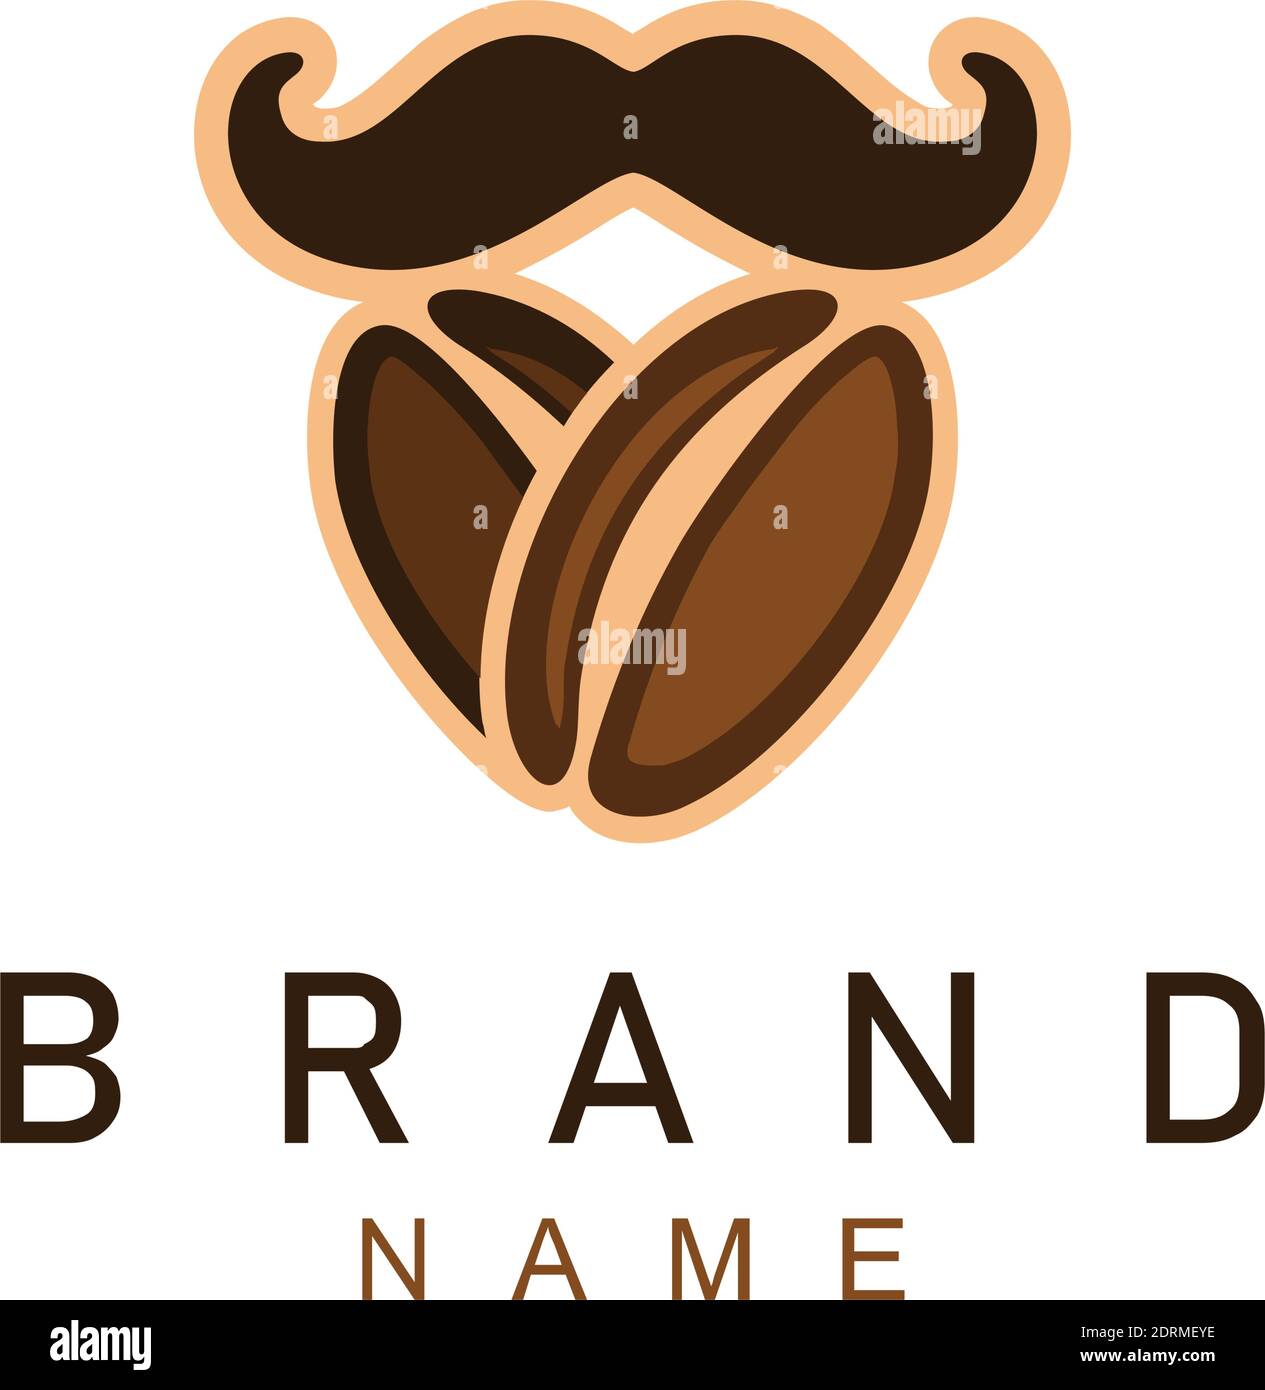 coffee bean abstract mustache beard logo icon vector graphic concept design Stock Vector